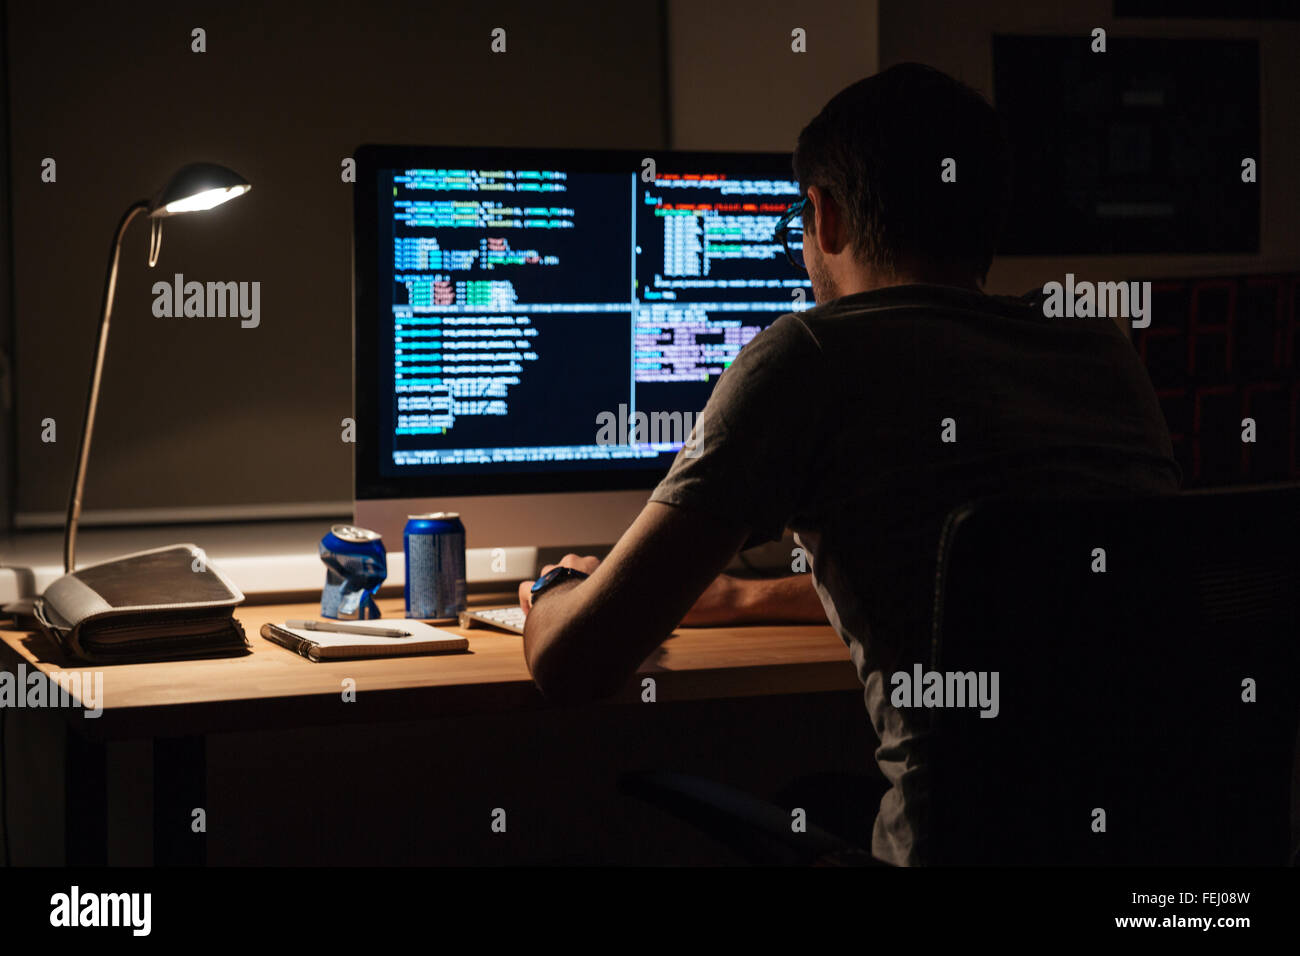 Vista posterior del programador moderno sentado y escribiendo código en una habitación oscura Foto de stock